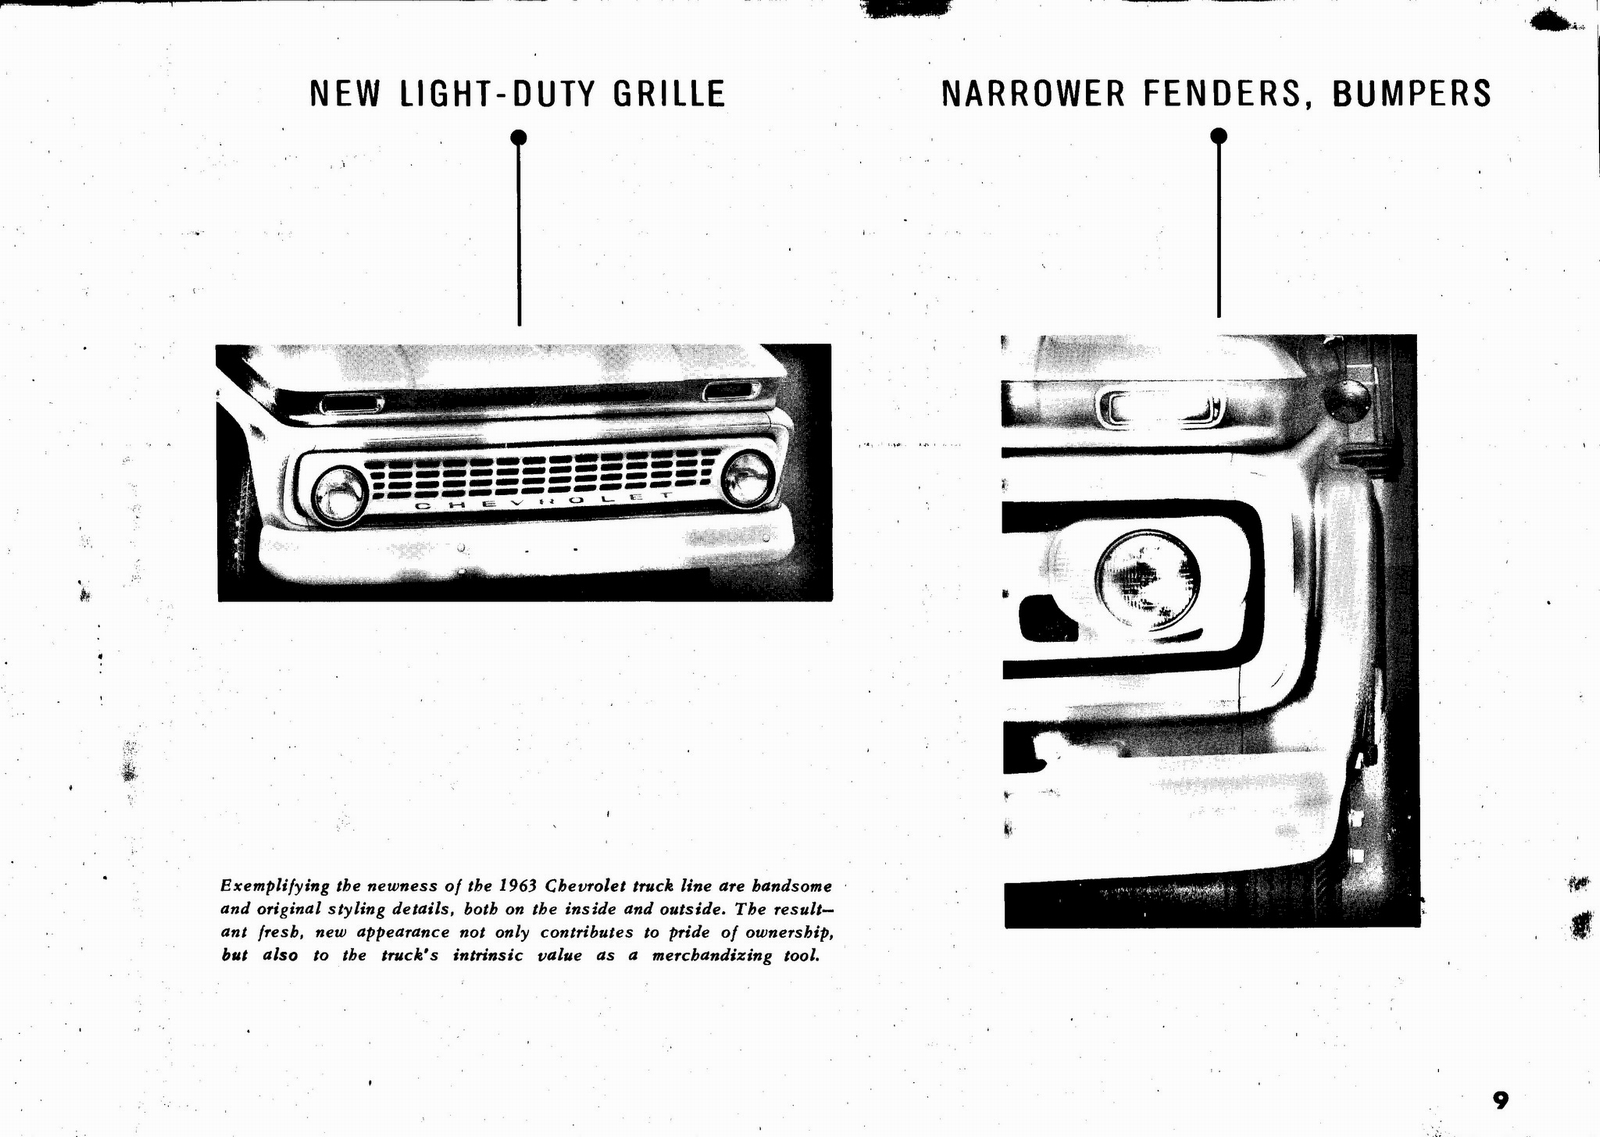 n_1963 Chevrolet Truck Engineering Features-09.jpg